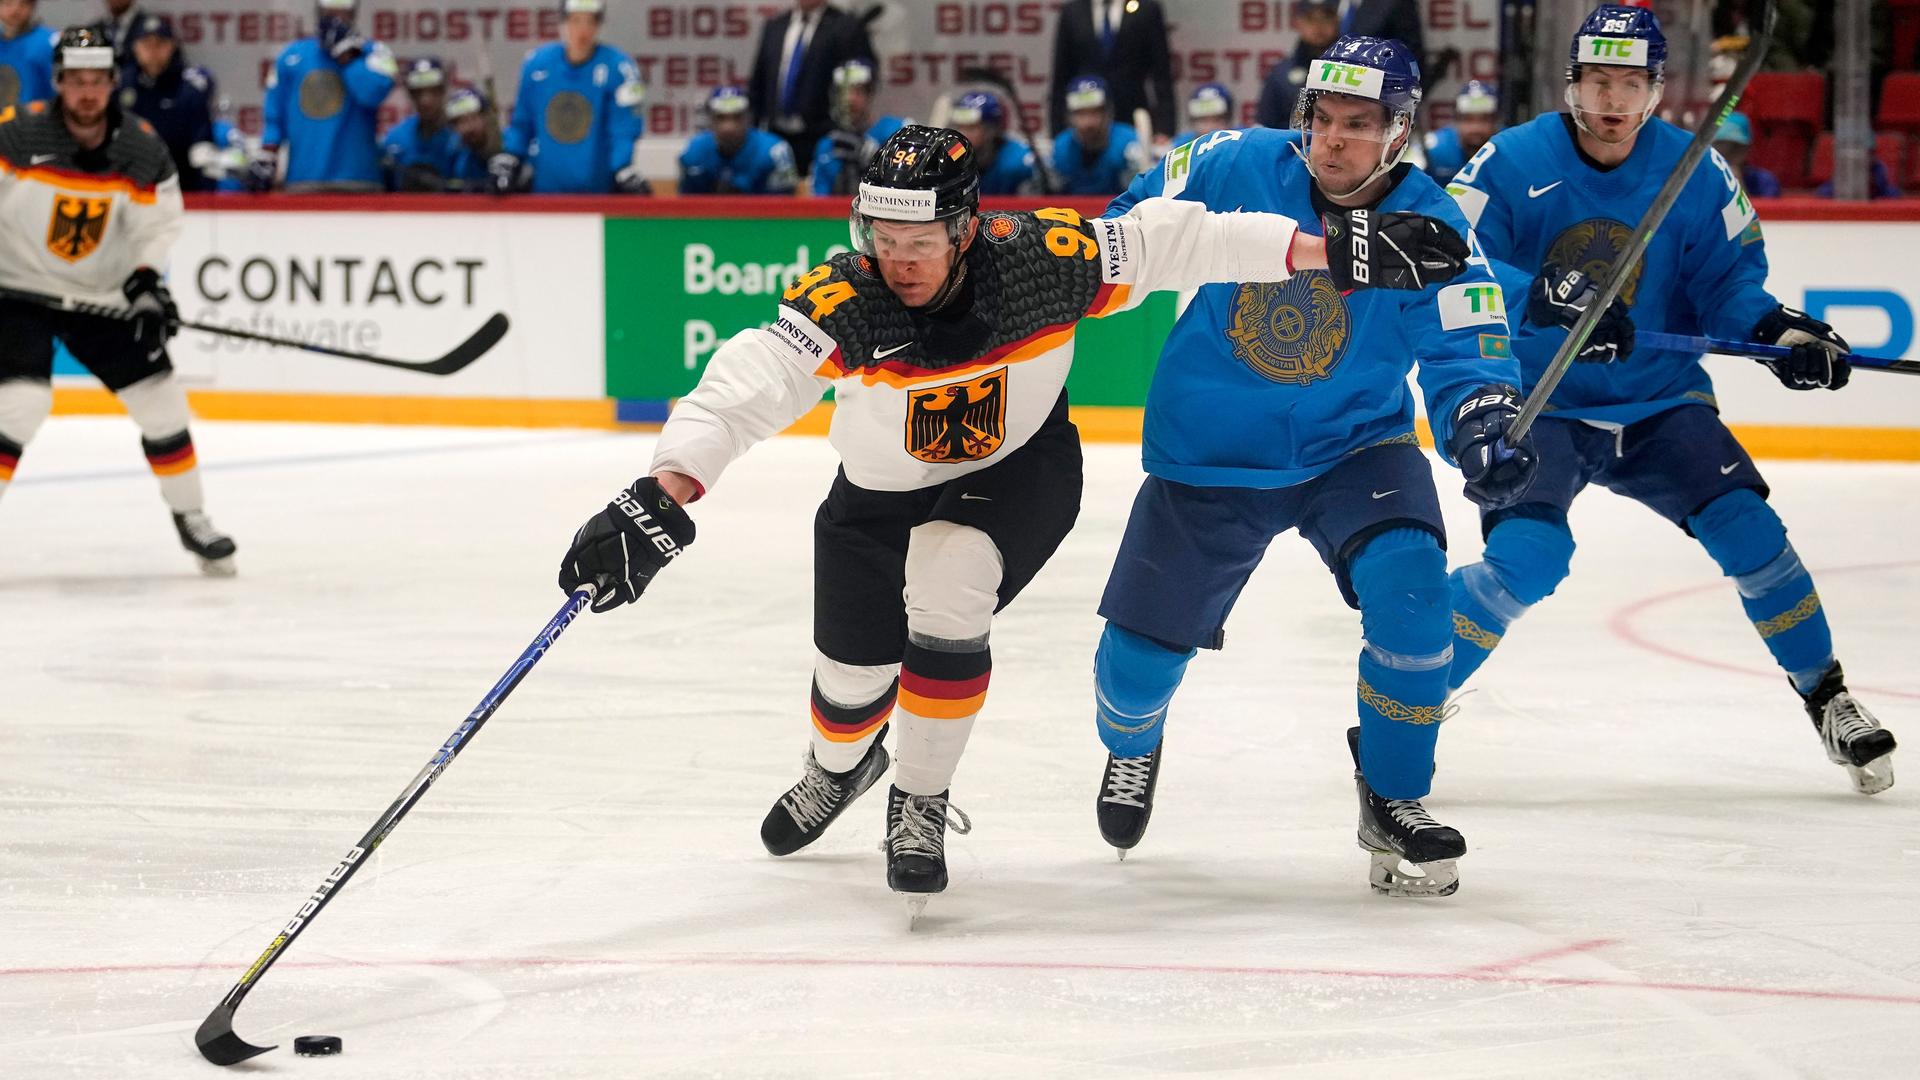 Eishockey-WM - Deutschland gewinnt mit 5:4 gegen Kasachstan